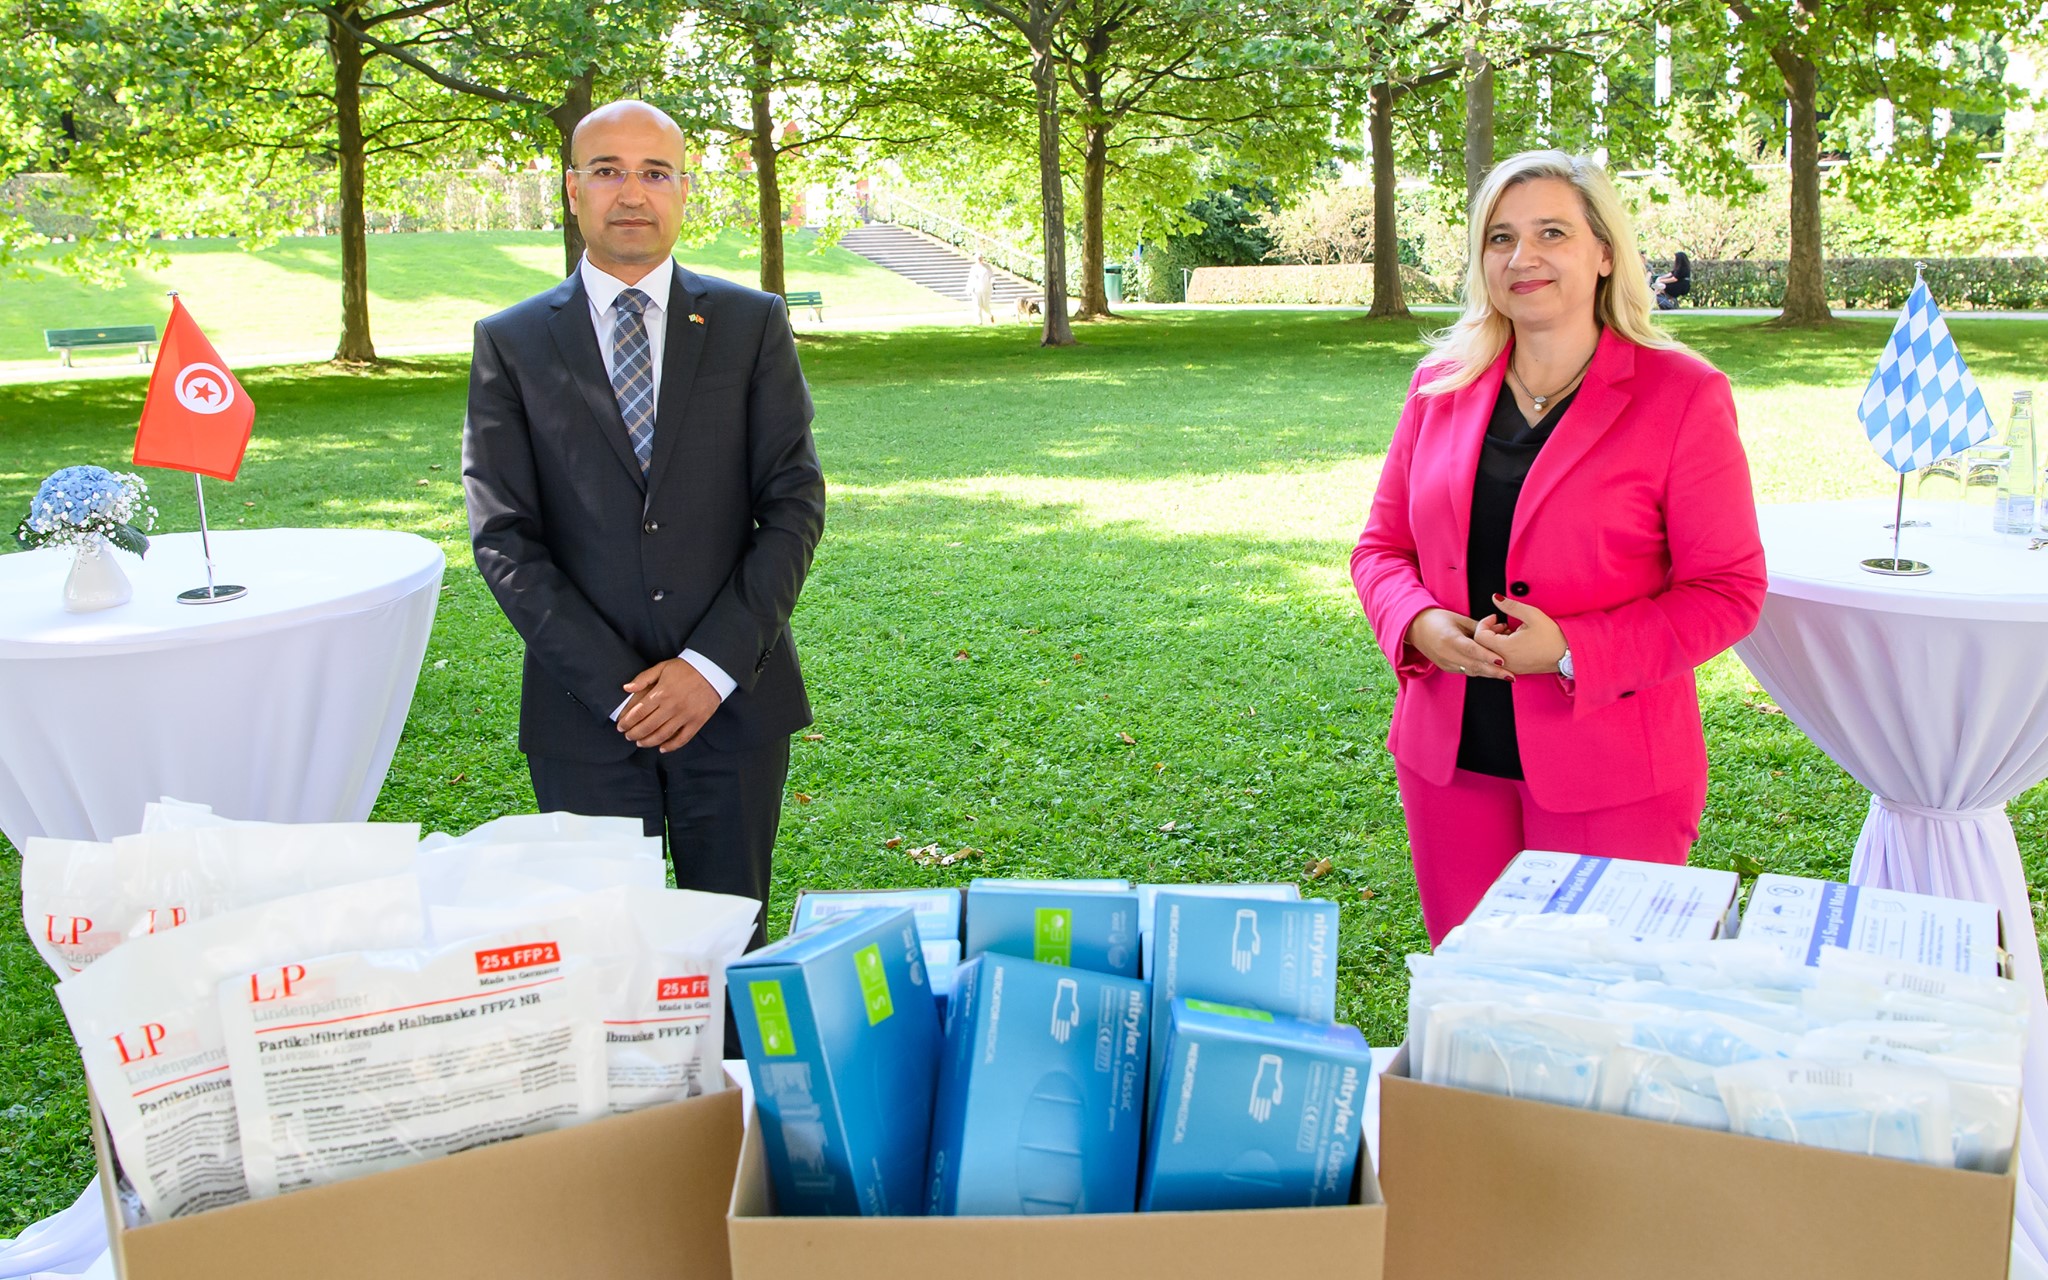 Tunisie-Ambassade d’Allemagne en Tunisie: Réception d’un don d’équipements médicaux